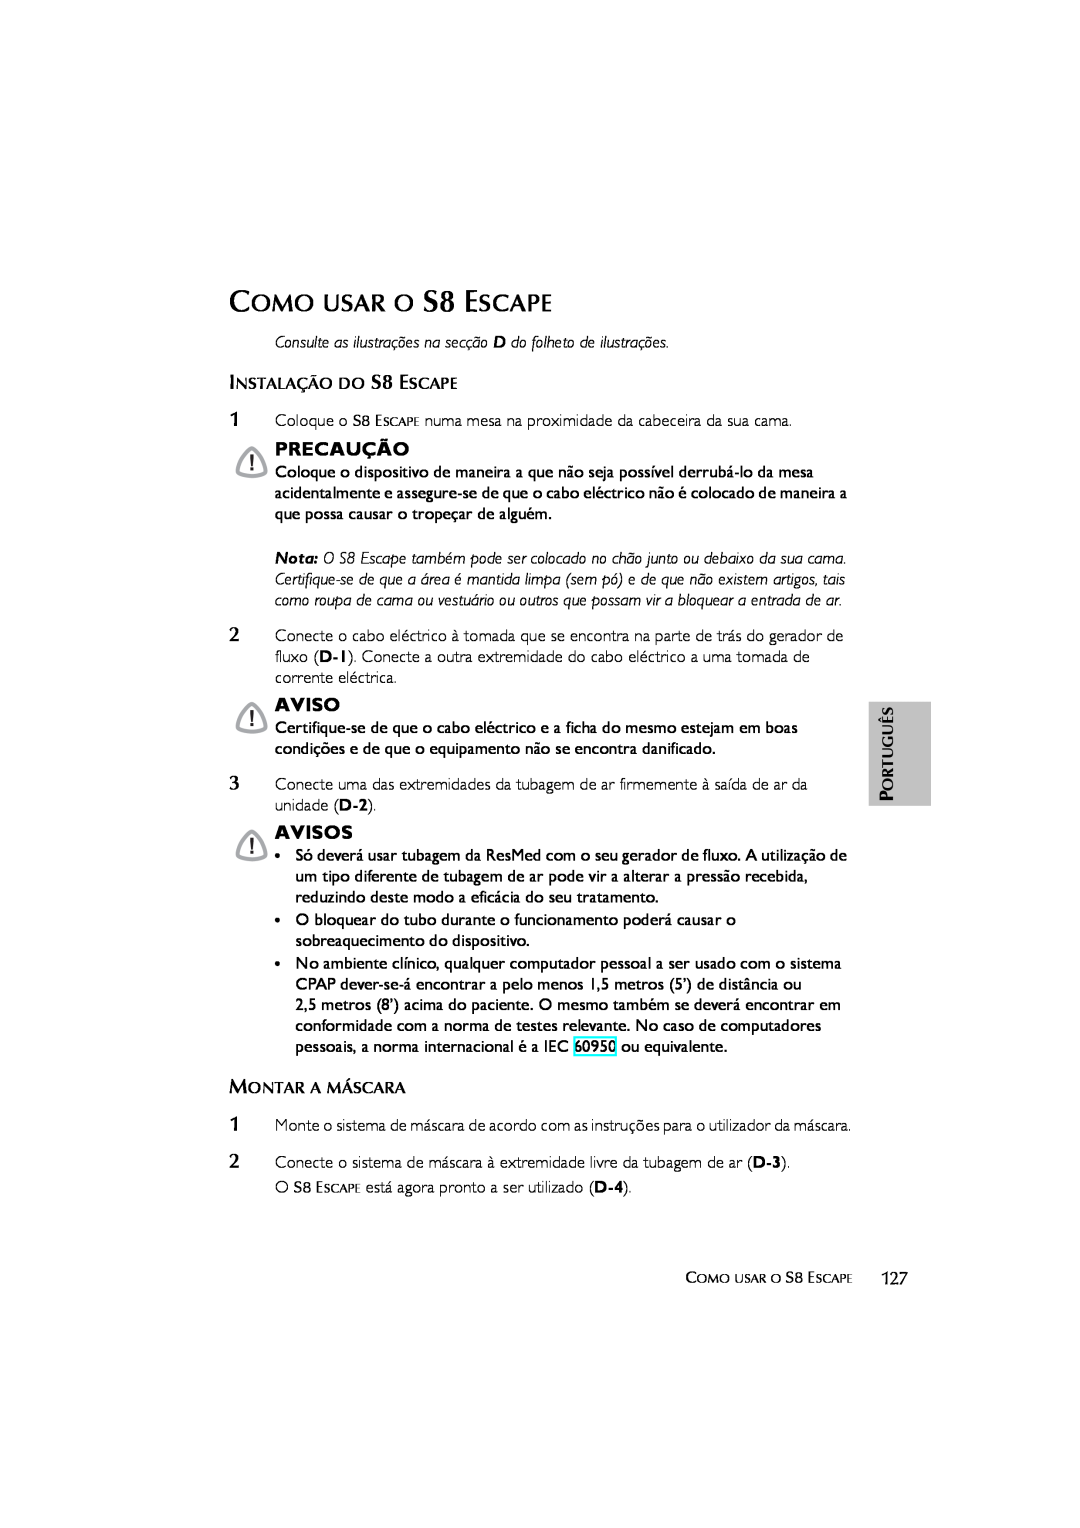 ResMed s8 user manual COMO USAR O S8 ESCAPE, Avisos, Precaução 